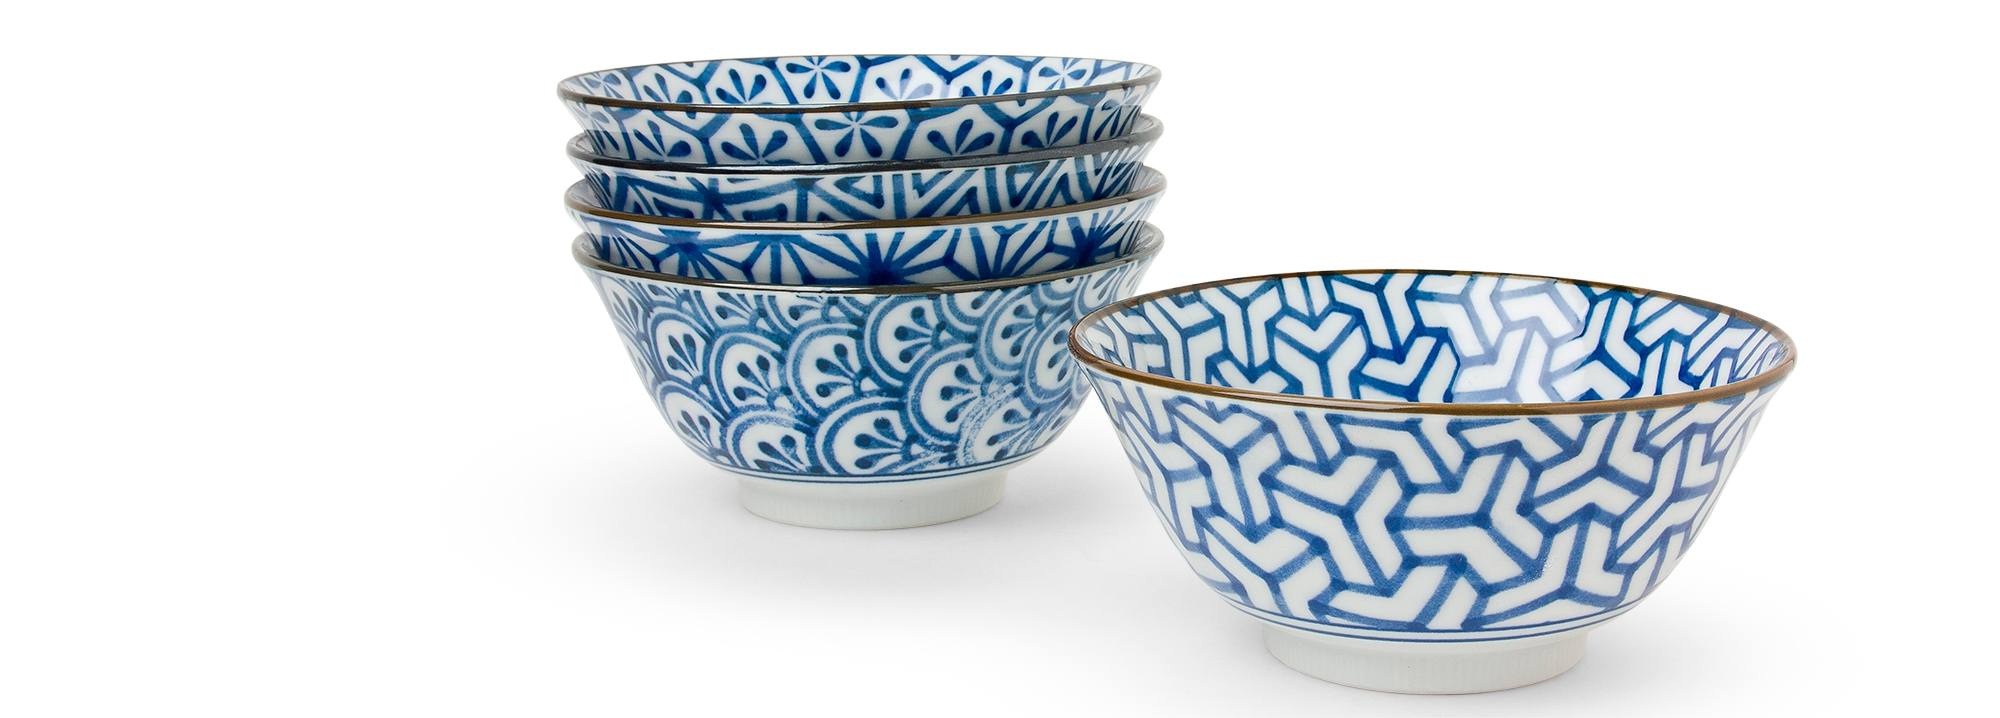 Asian plates bowls